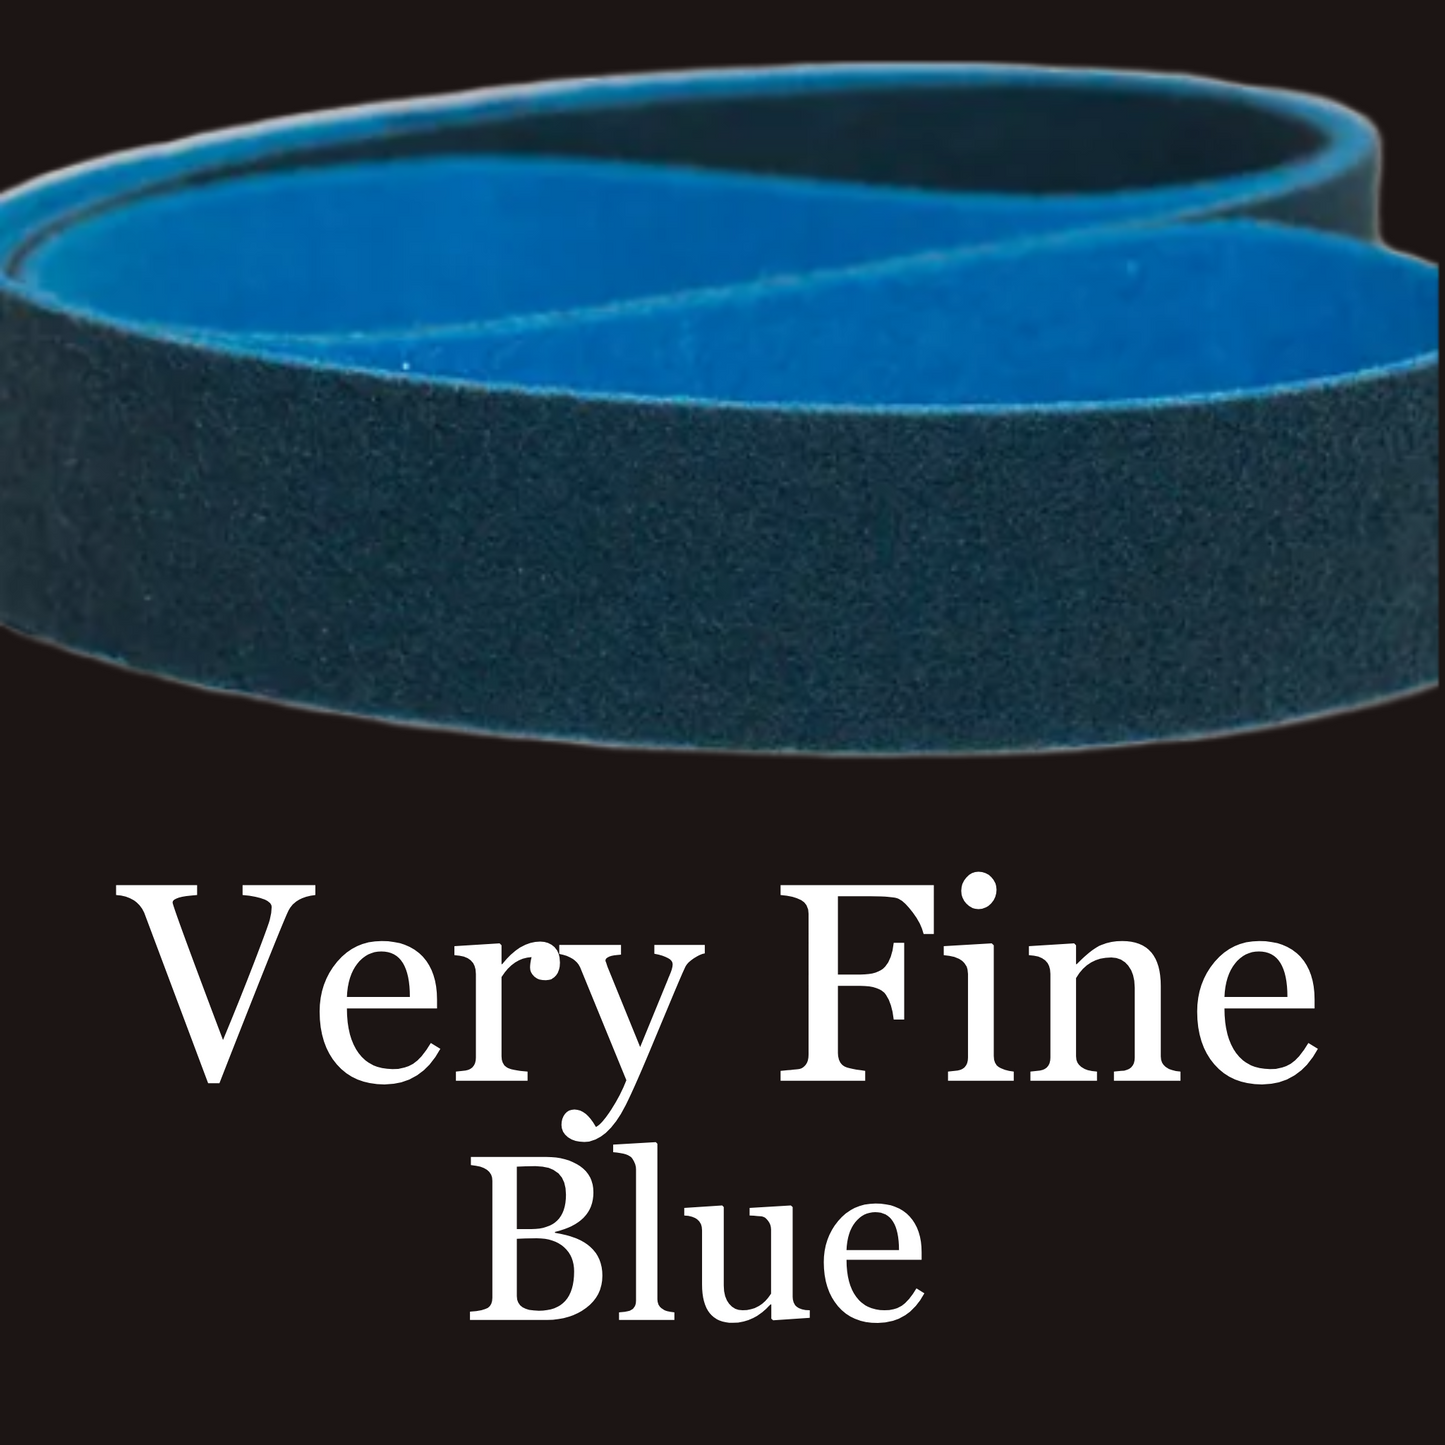 1" x 30" Scotch-Brite Belt Very Fine Grit Blue